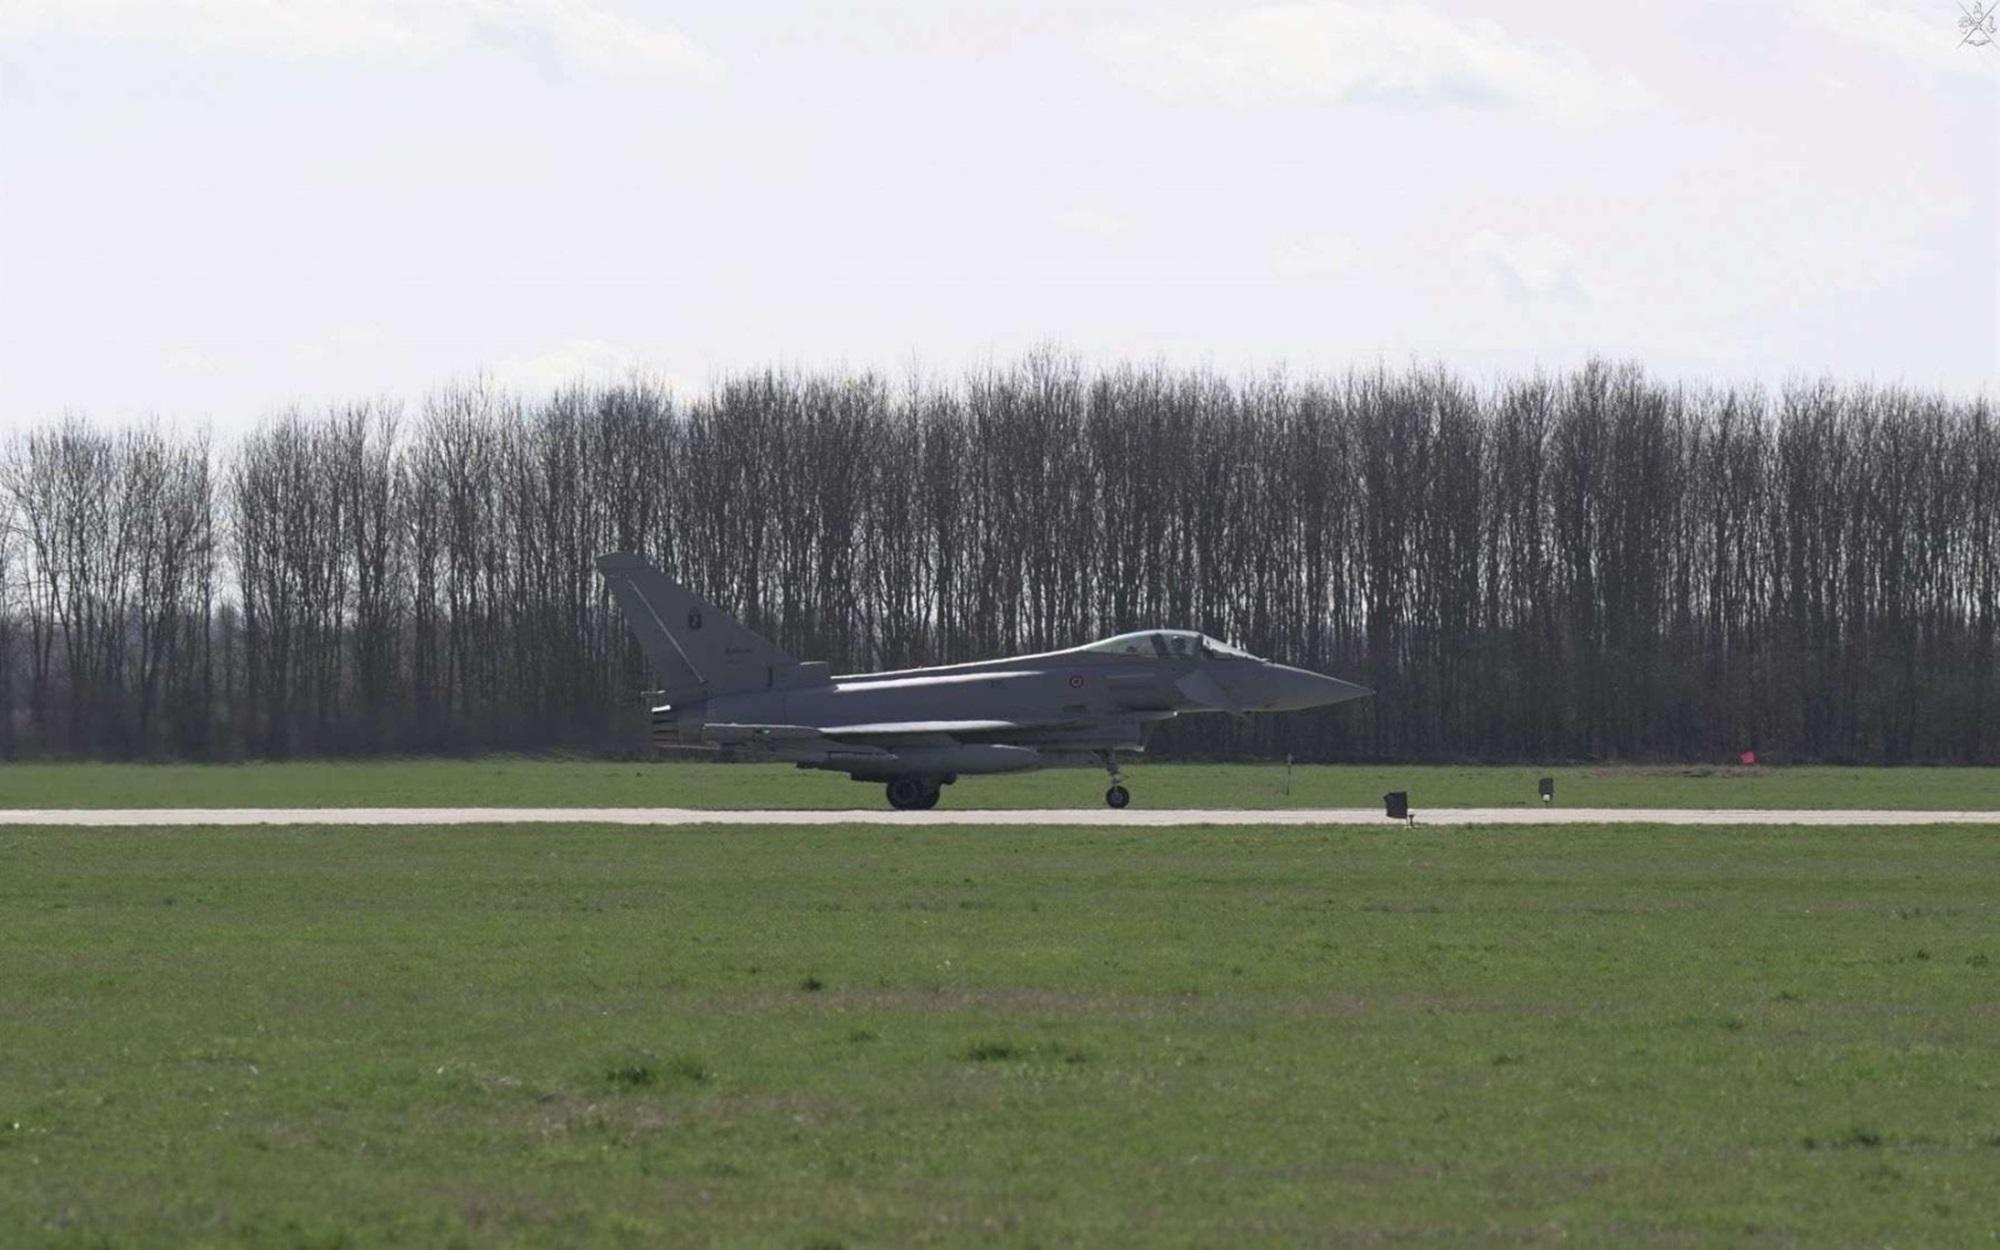 Italian fighters intercept Russian plane over Baltic Sea, NATO on high alert